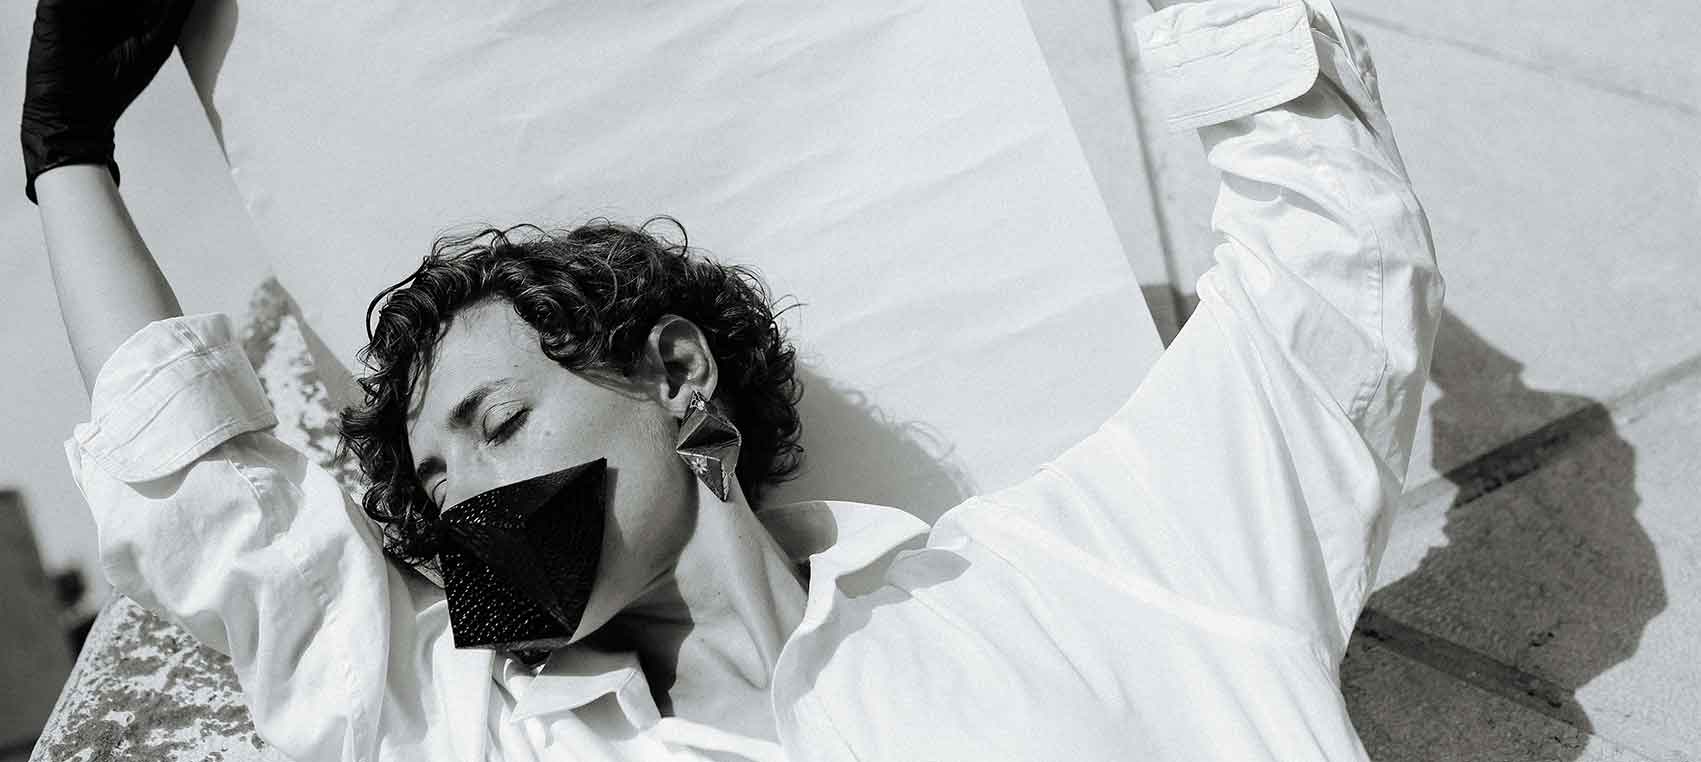 צילום-עיצוב-תכשיטים-הדר אלפסי-דוגמנית-רינה נקונצ'נהפקות אופנה - י-Fashion Israel-מגזין-אופנה-ישראלי-הפקות-אופנה-5